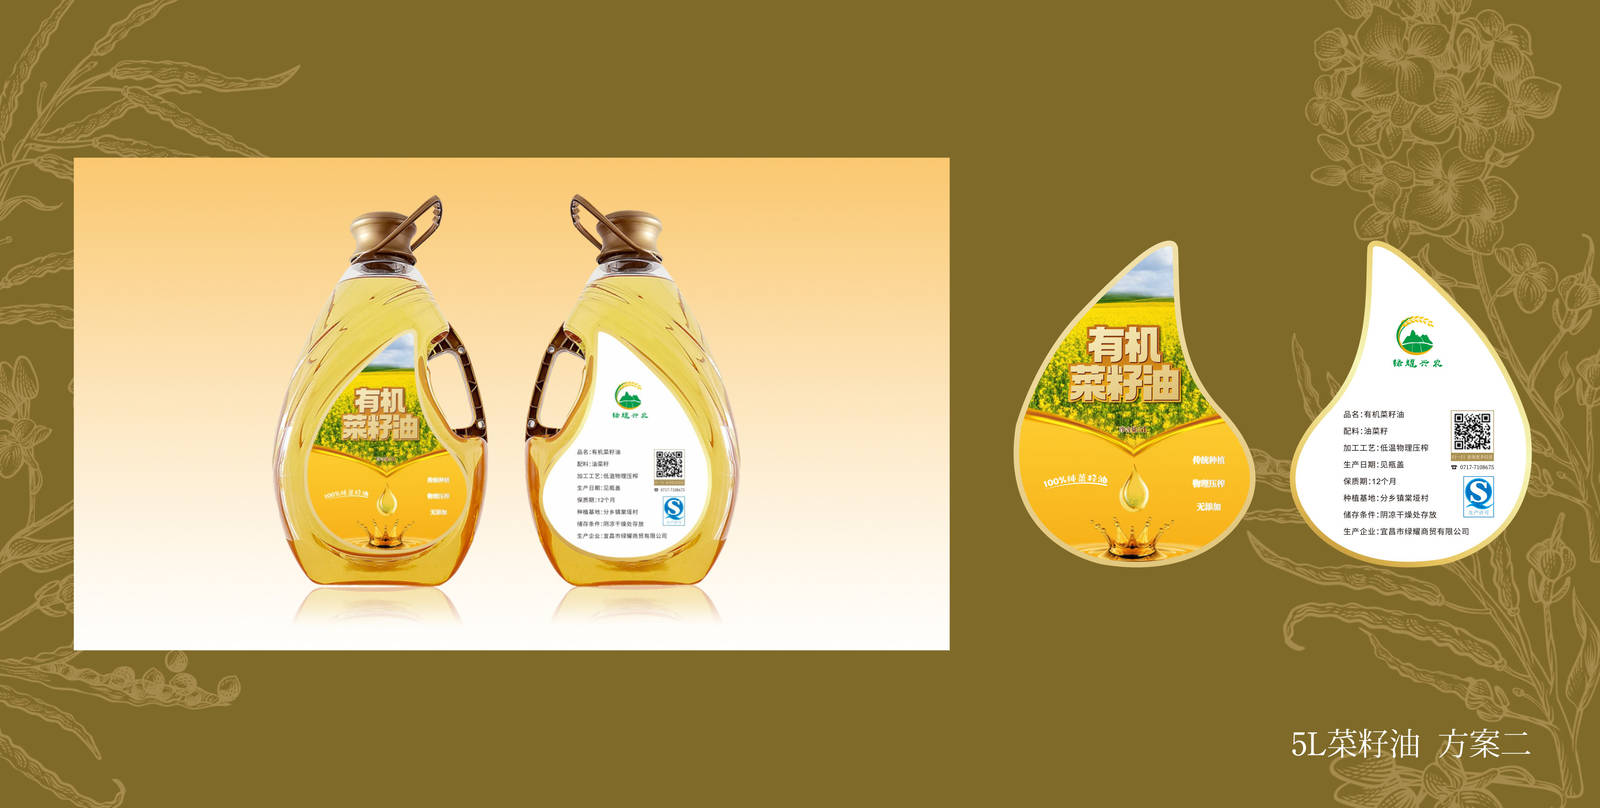 绿耀有机菜籽油形象系列瓶子包装设计-第6张